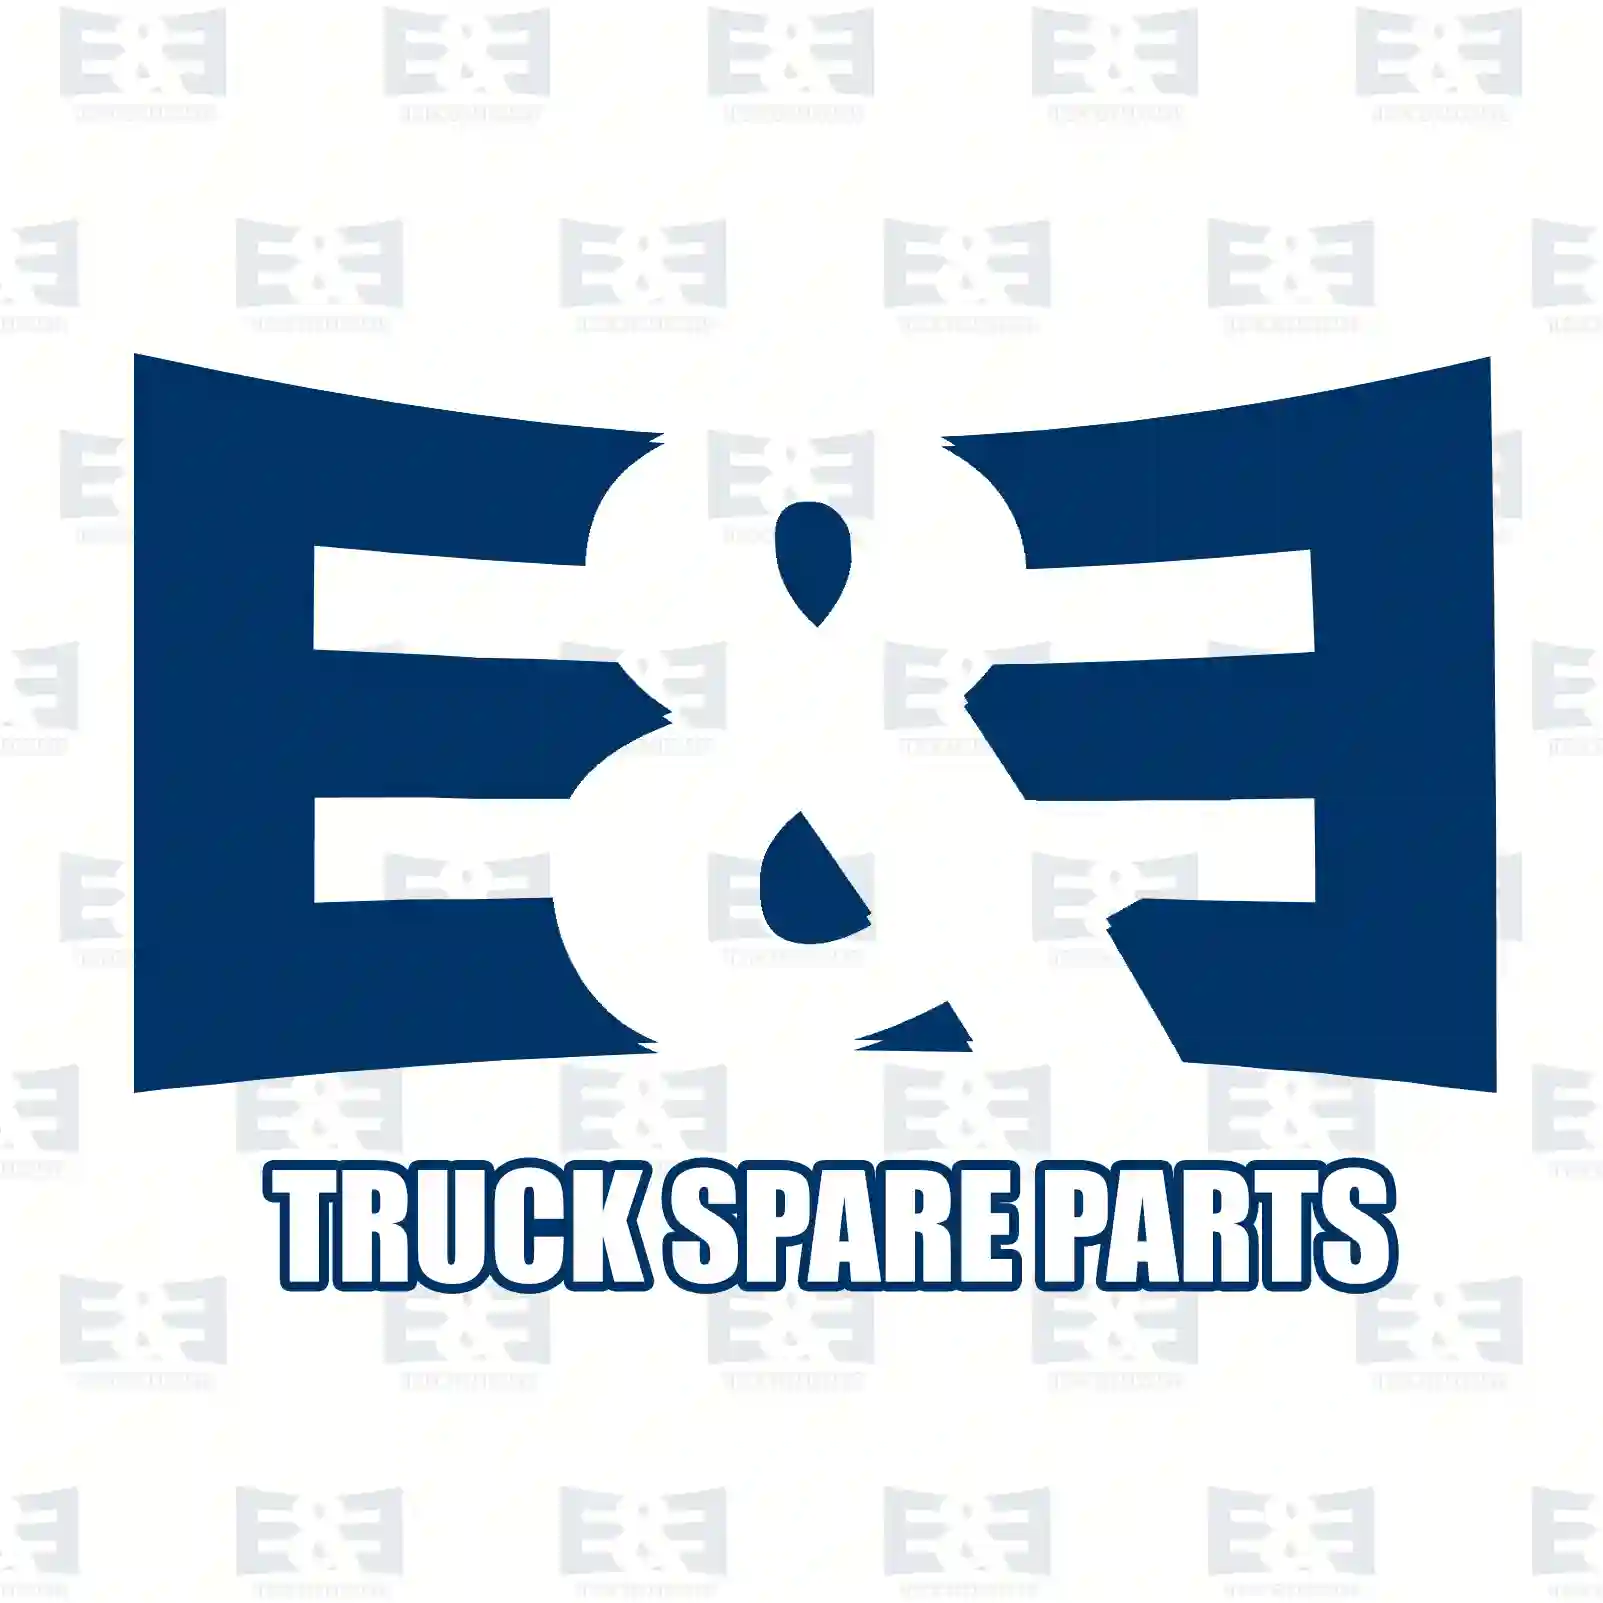 General overhaul kit, 2E2206851, 85119953 ||  2E2206851 E&E Truck Spare Parts | Truck Spare Parts, Auotomotive Spare Parts General overhaul kit, 2E2206851, 85119953 ||  2E2206851 E&E Truck Spare Parts | Truck Spare Parts, Auotomotive Spare Parts